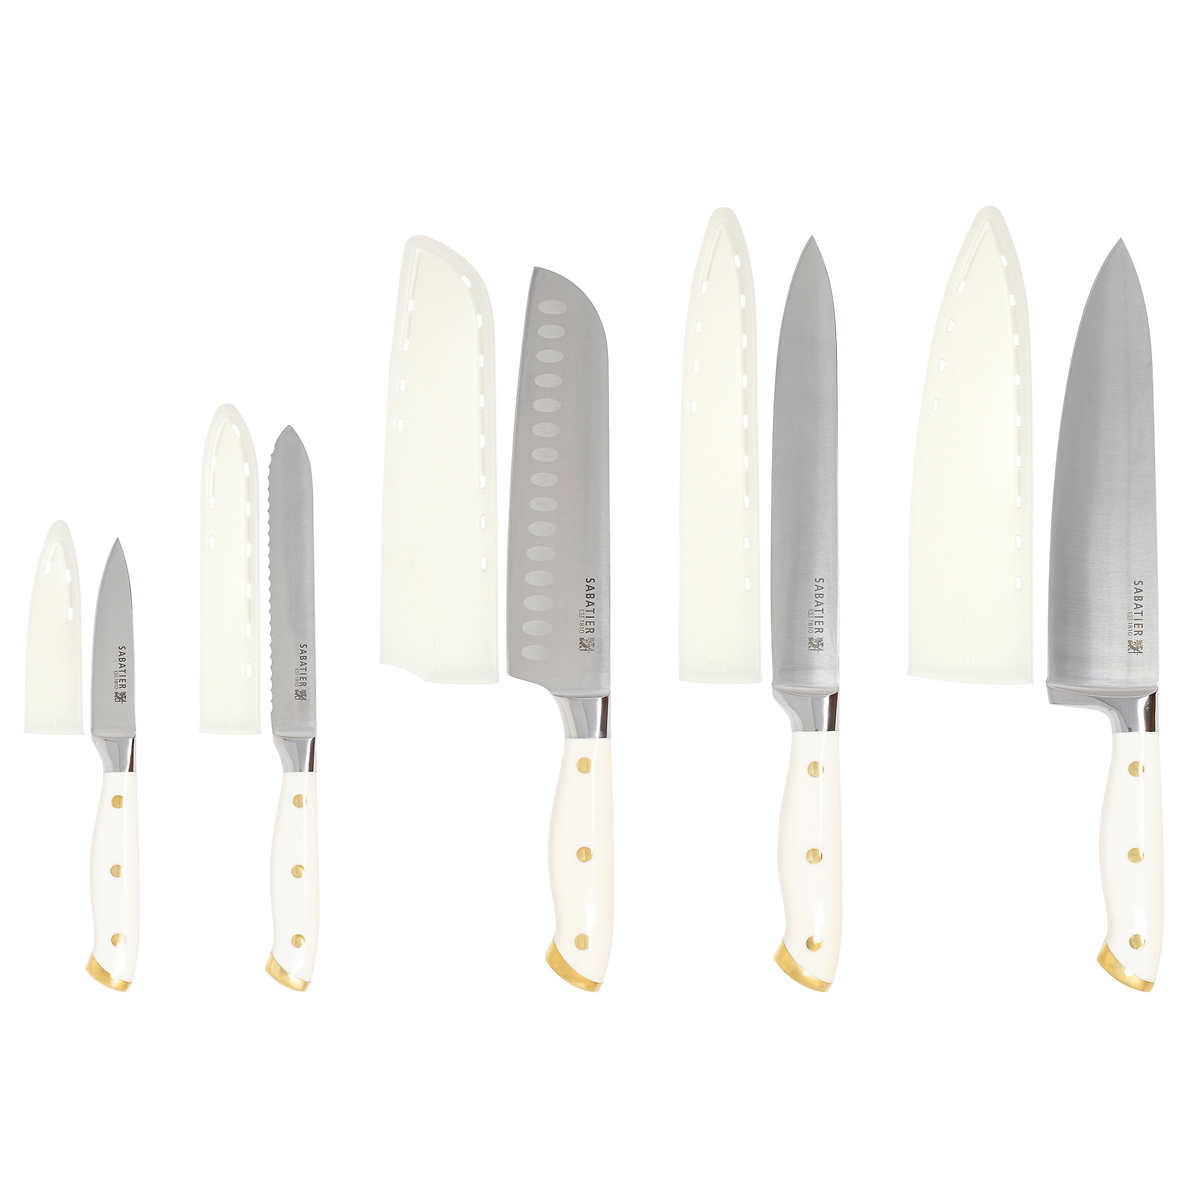 sabatier-ensemble-5-couteaux-acier-allemenad-forgé-trois-rivets-forged-german-steel-triple-riveted-cutlery-set-knives-2